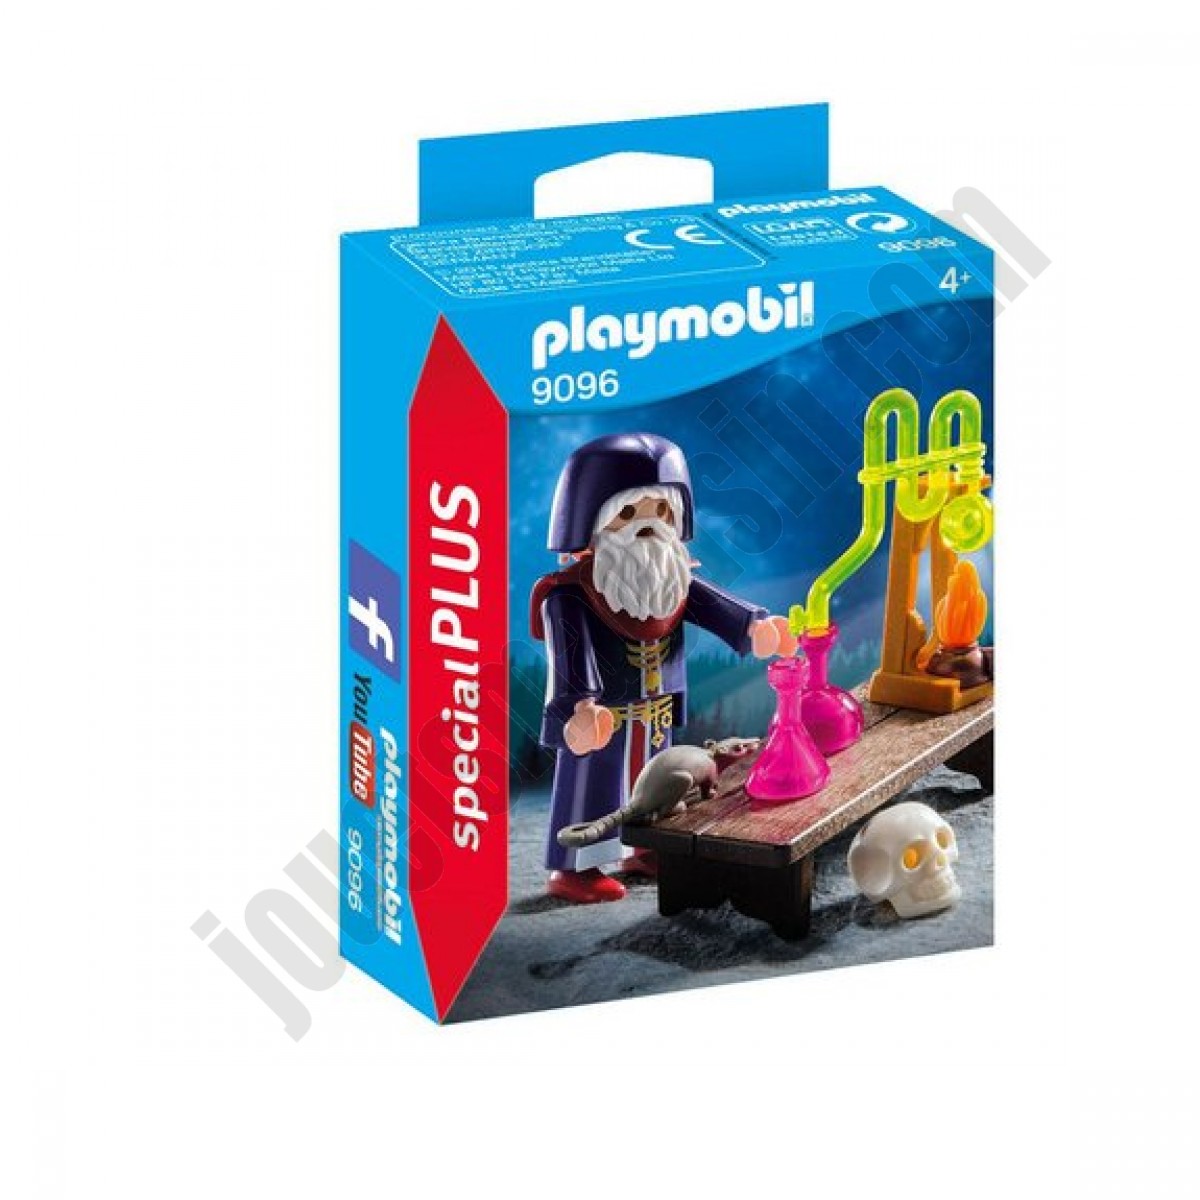 Alchimiste Playmobil Special PLUS 9096 En promotion - Alchimiste Playmobil Special PLUS 9096 En promotion